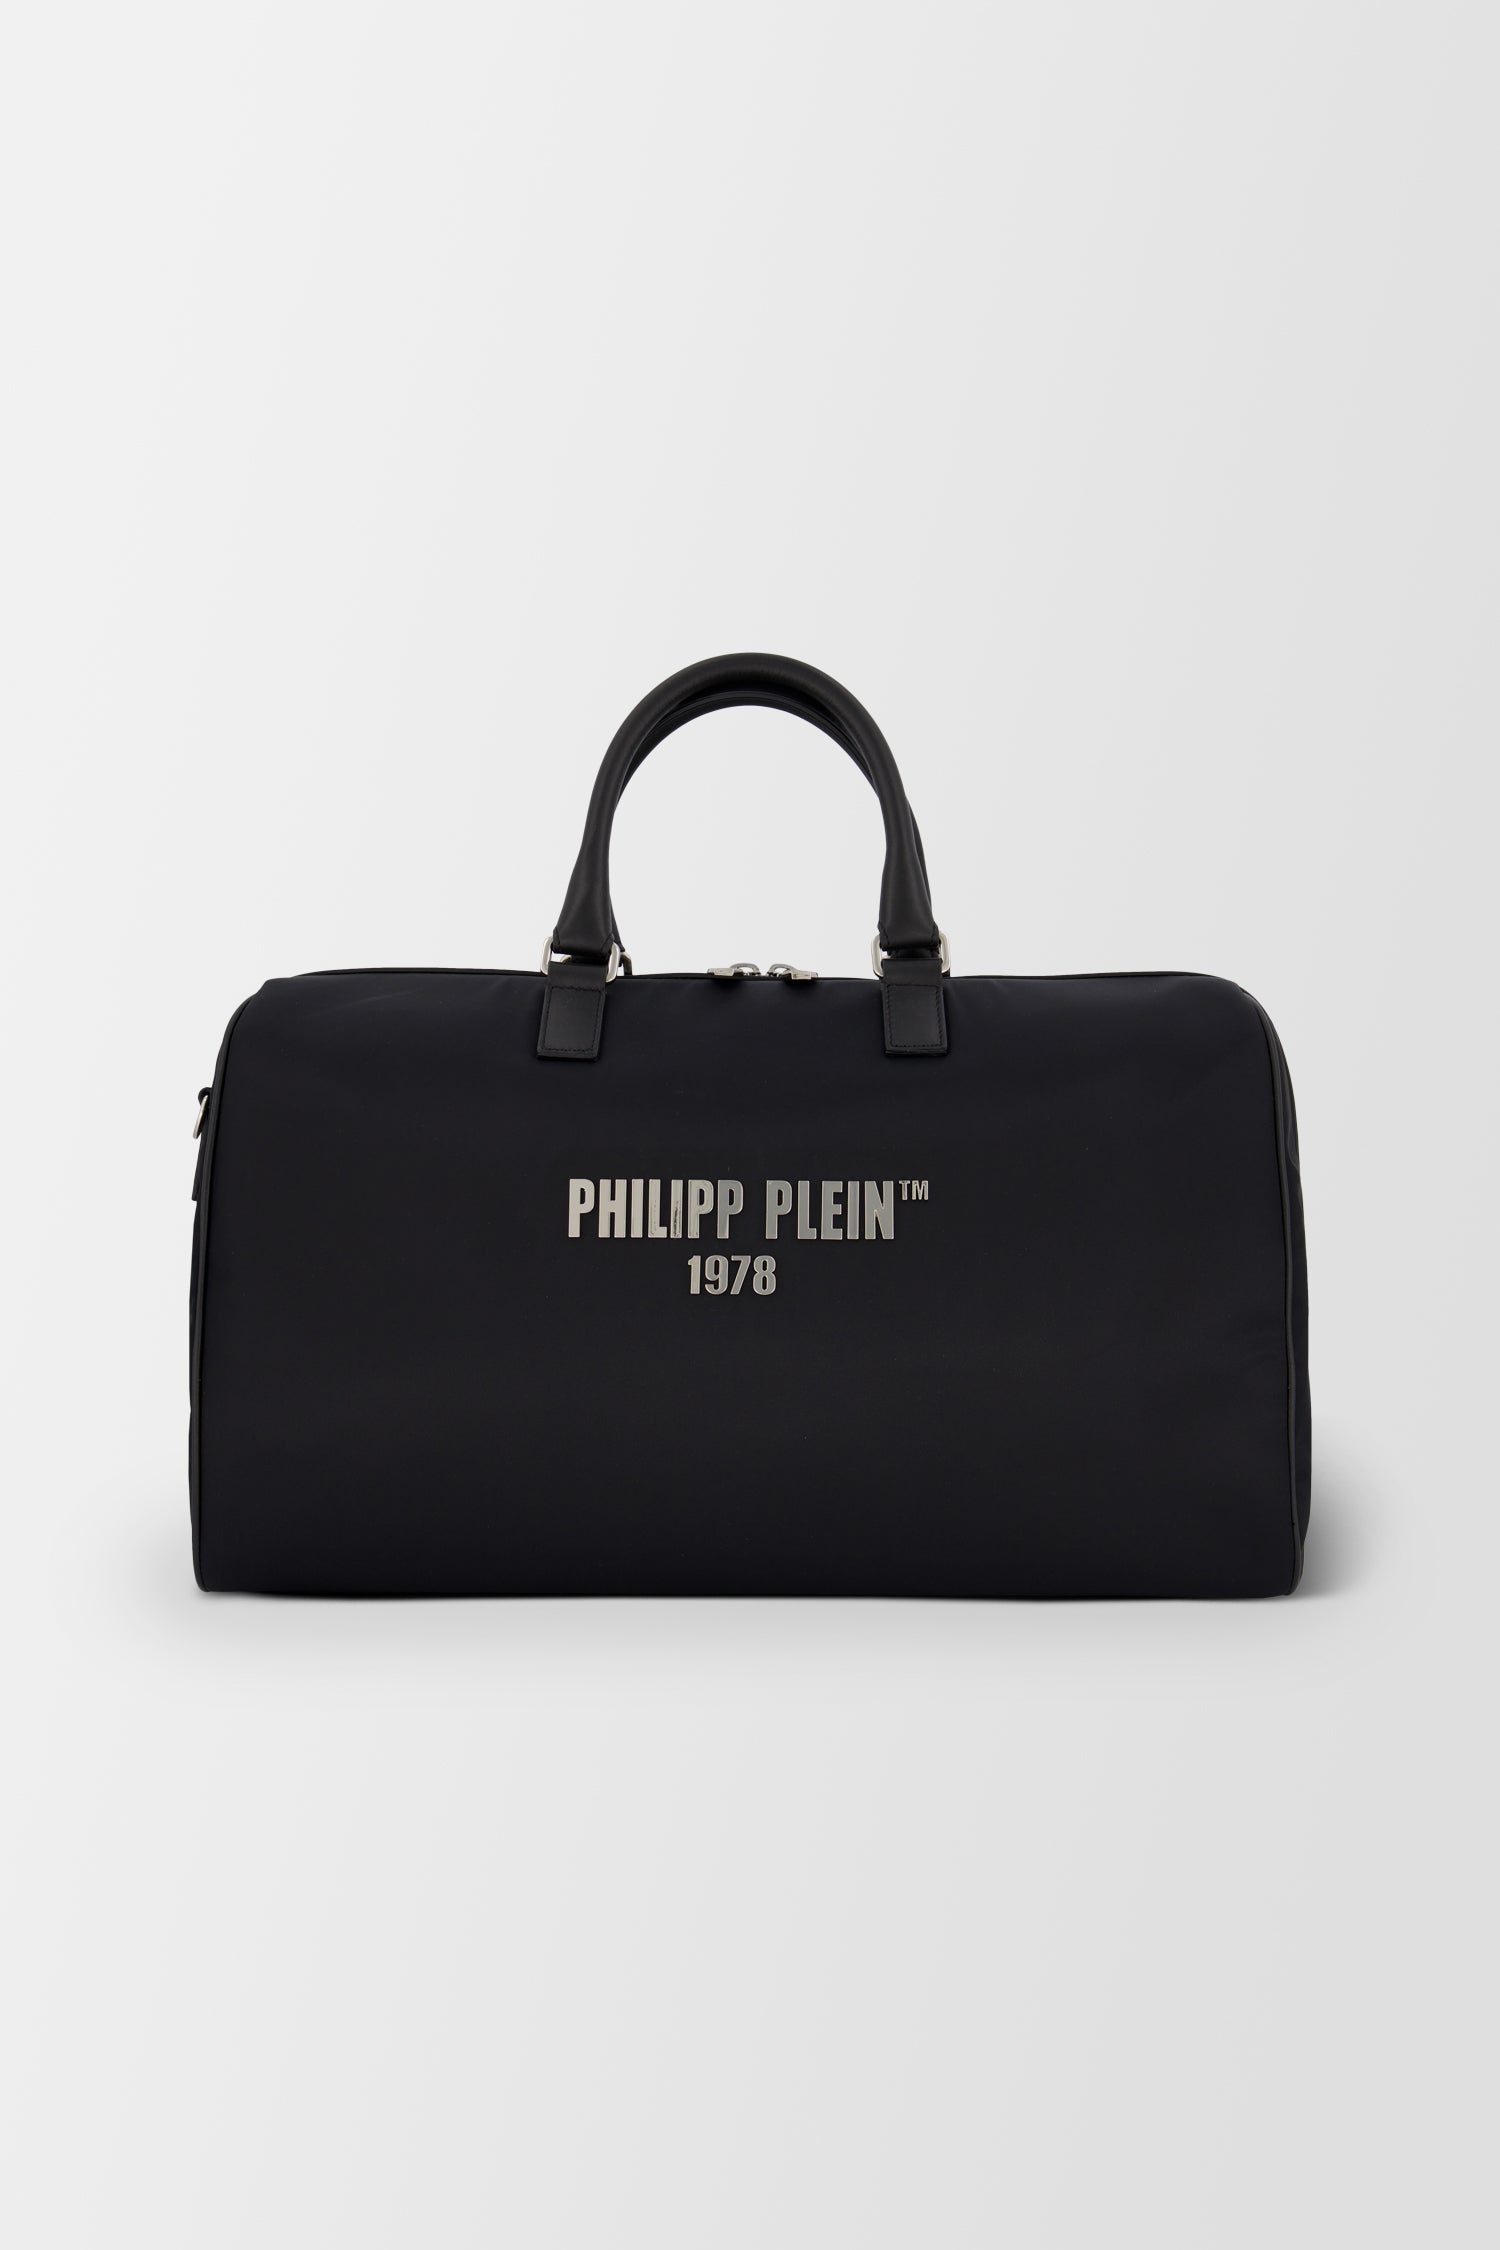 Philipp Plein Medium Travel Bag